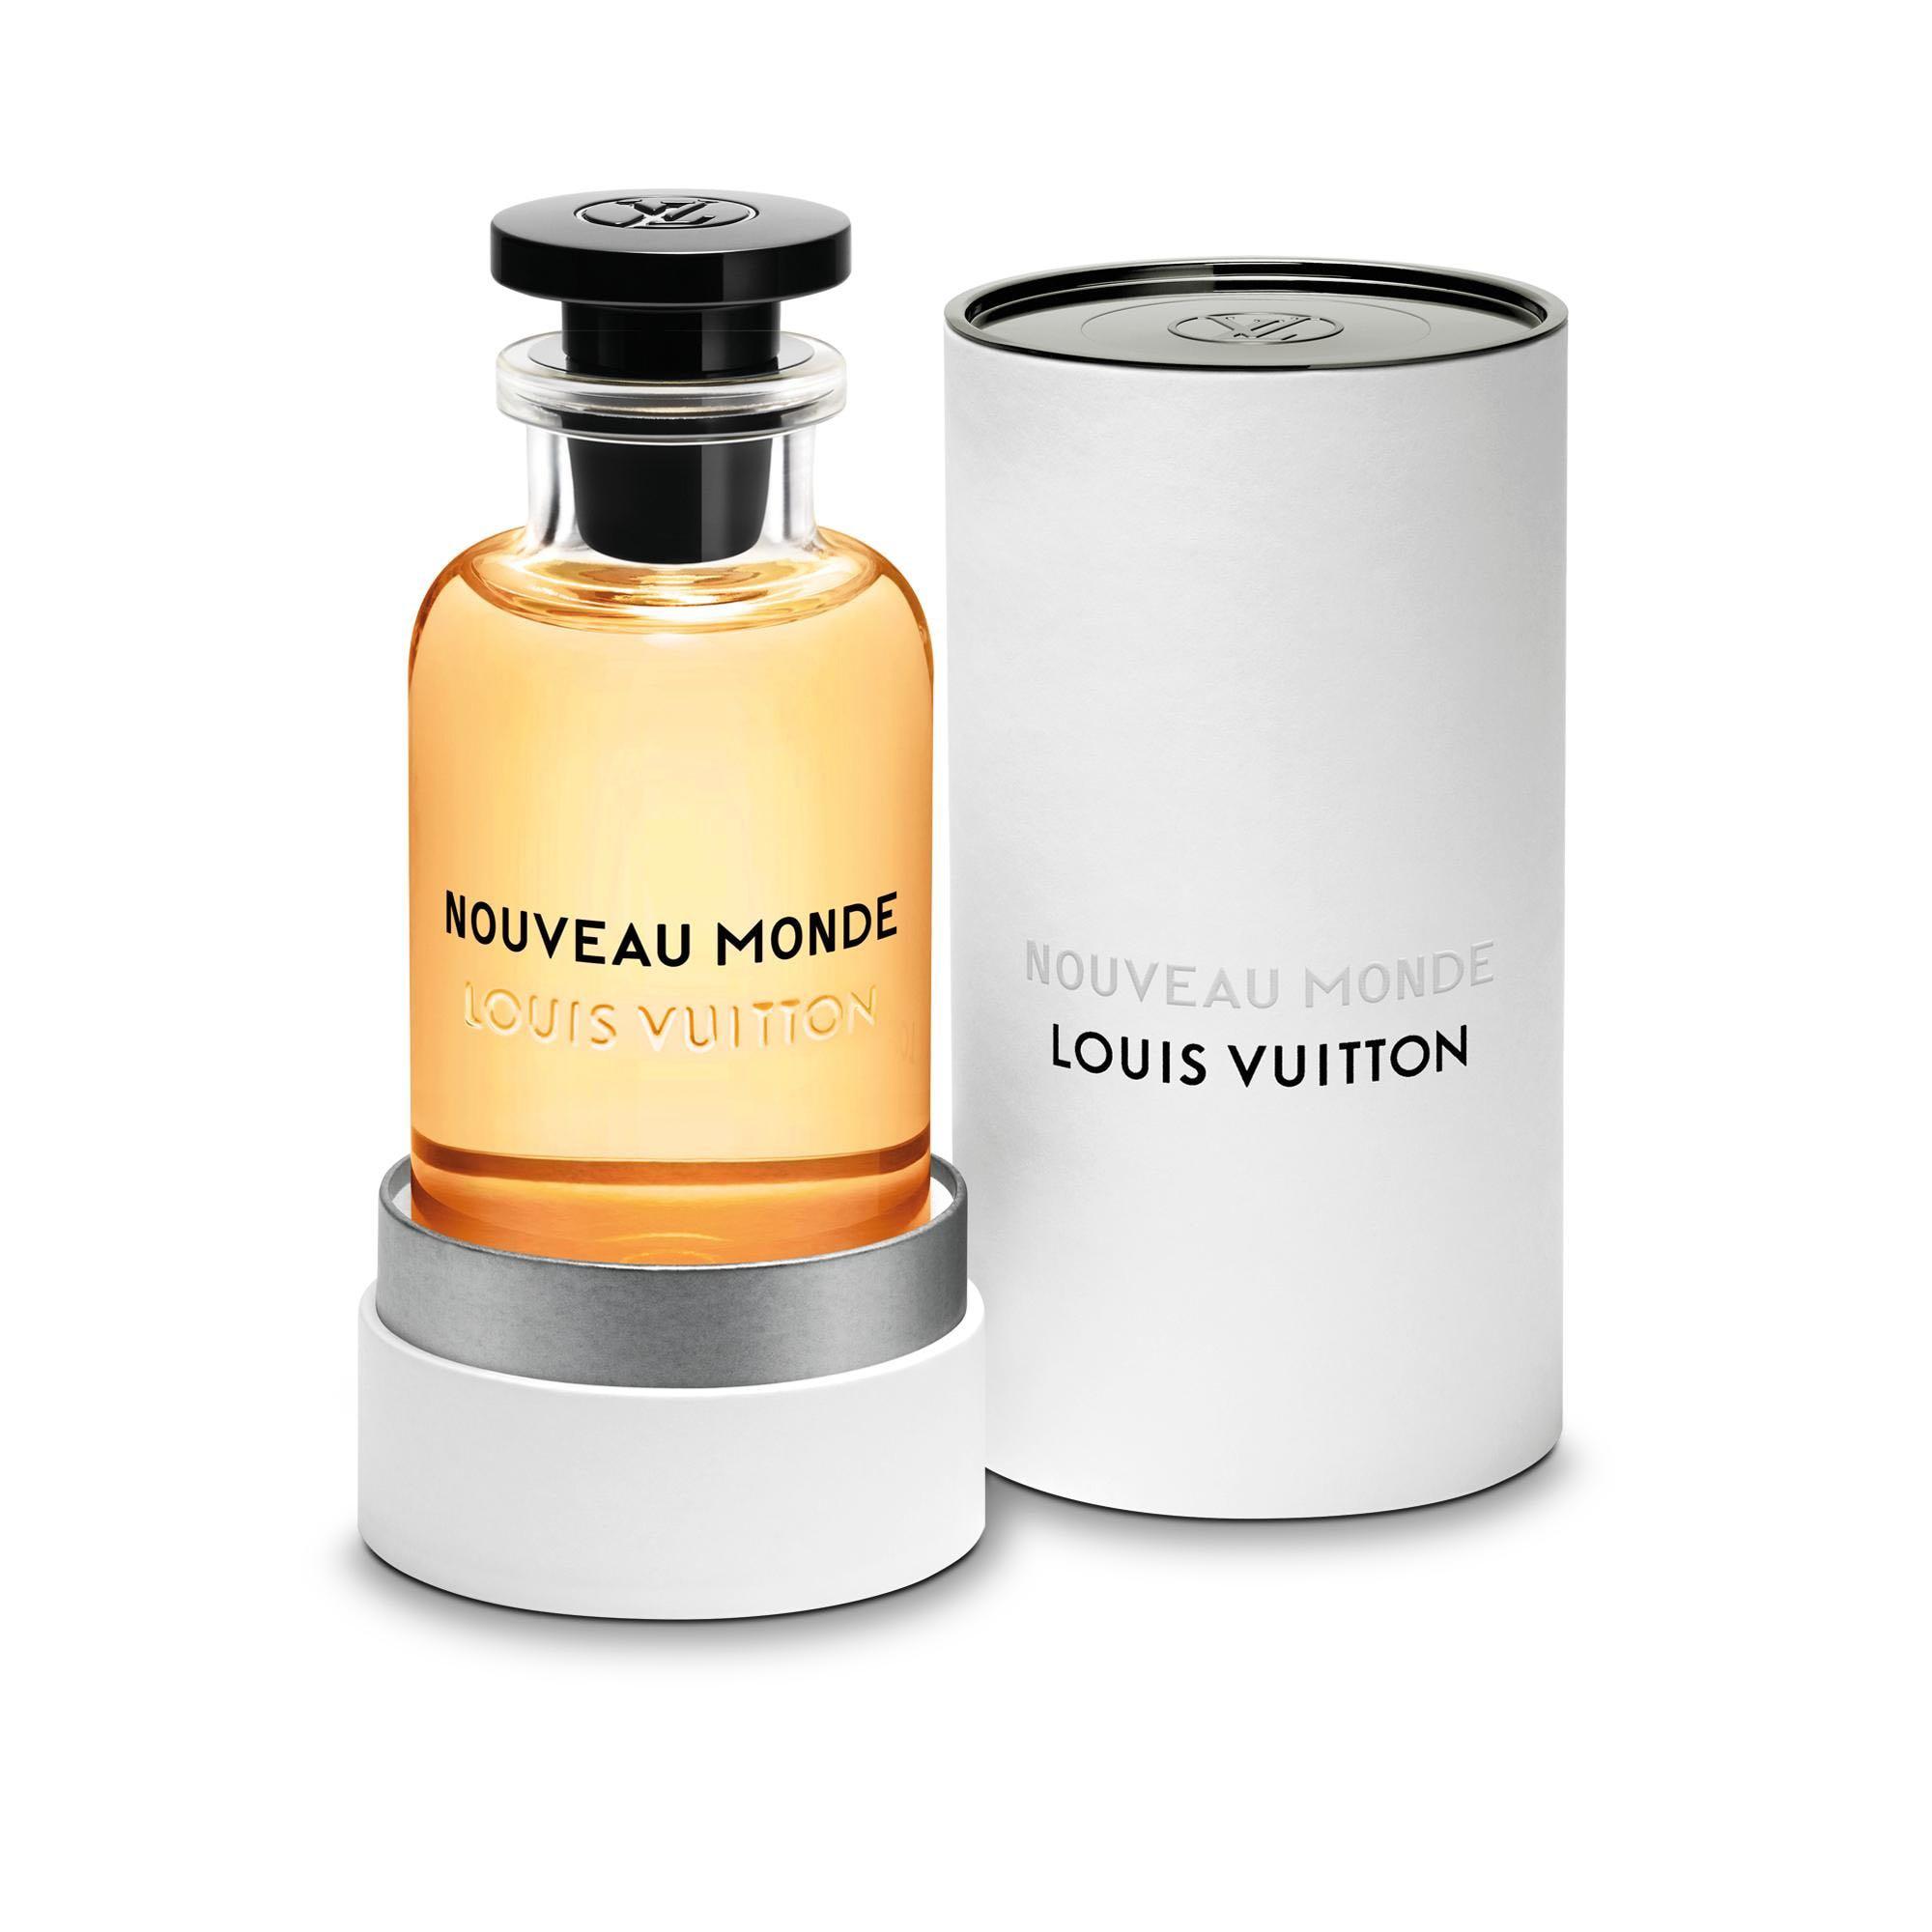 Louis Vuitton Nouveau Monde 2ml official perfume sample –